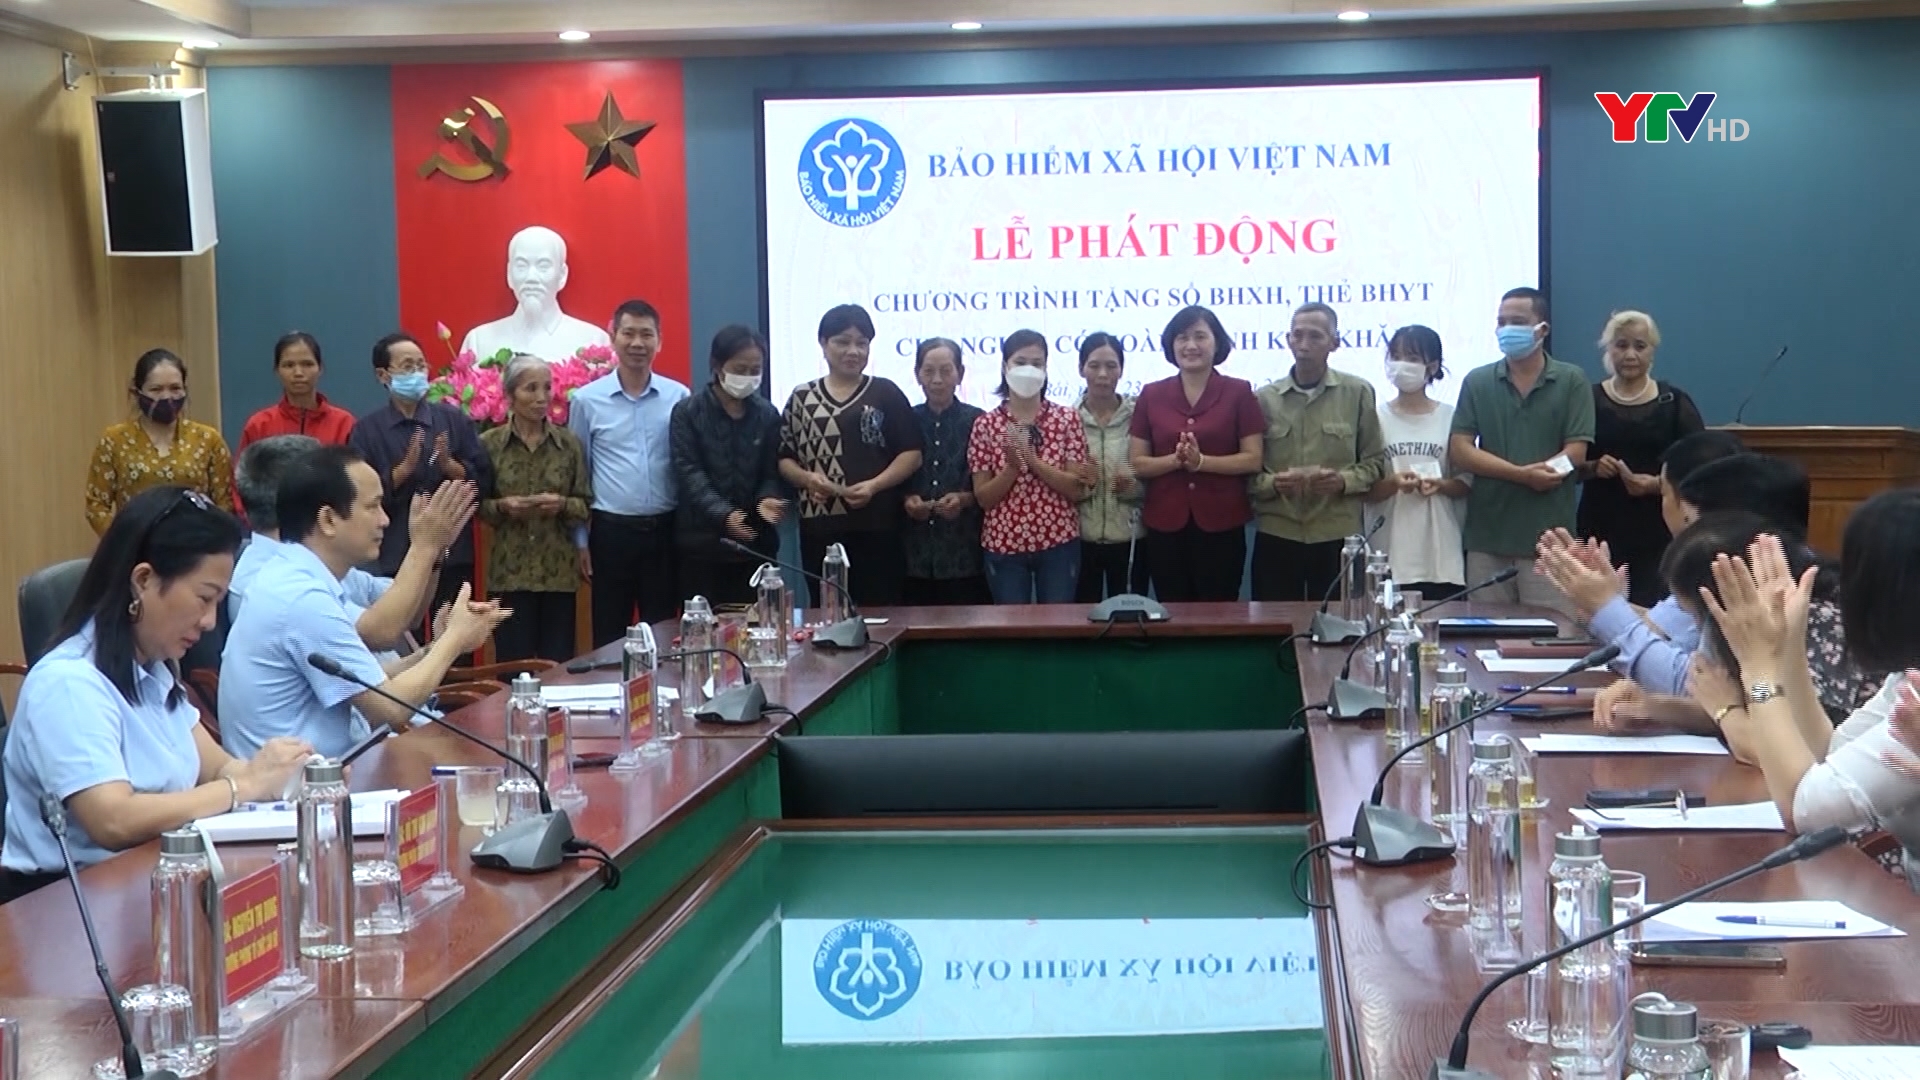 BHXH Việt Nam phát động "Chương trình tặng sổ BHXH, thẻ BHYT cho người có hoàn cảnh khó khăn"